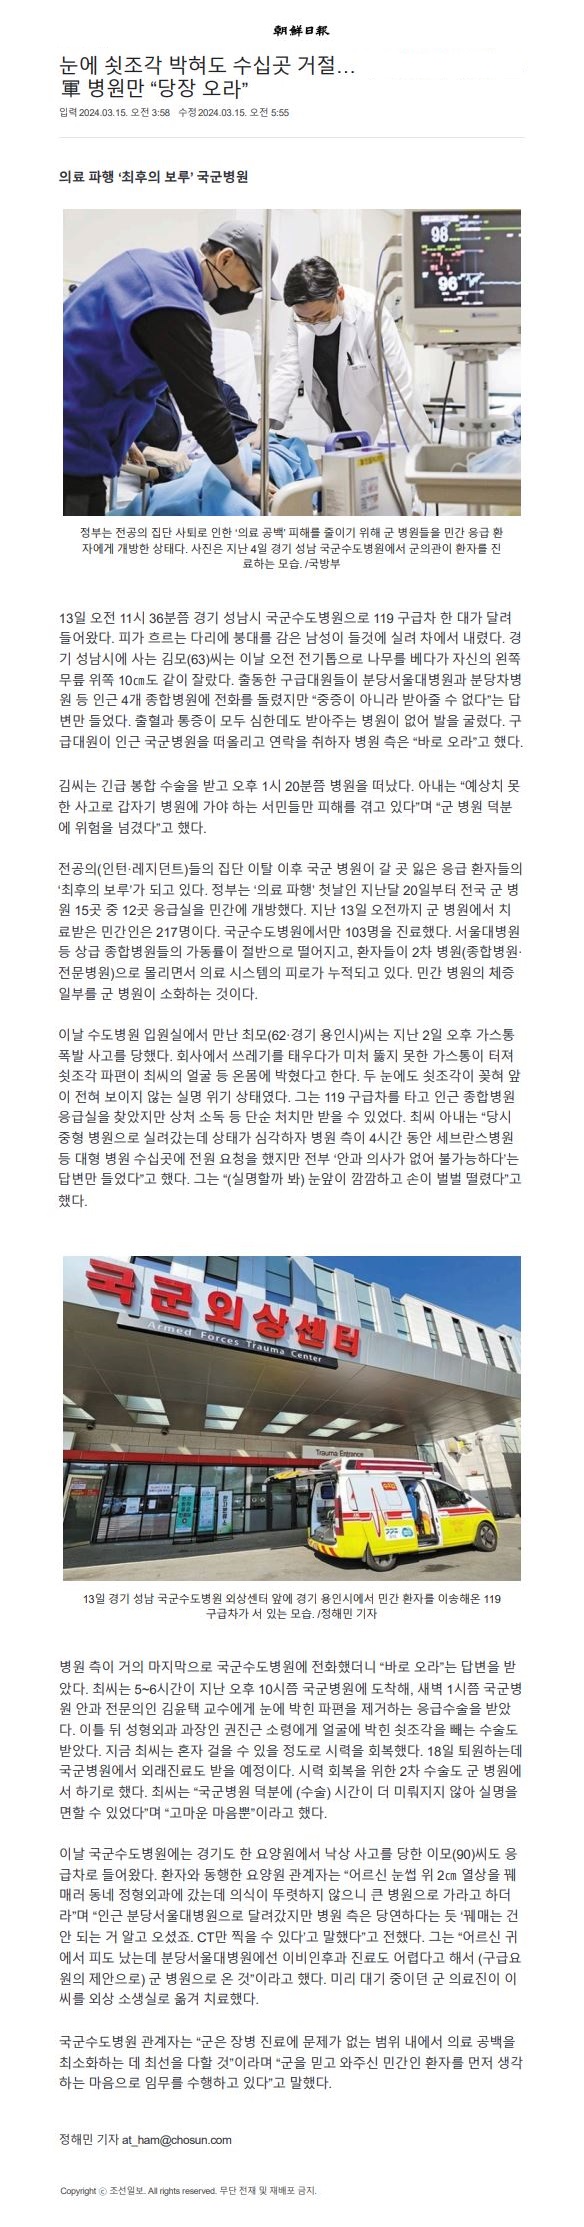 조선일보 기사